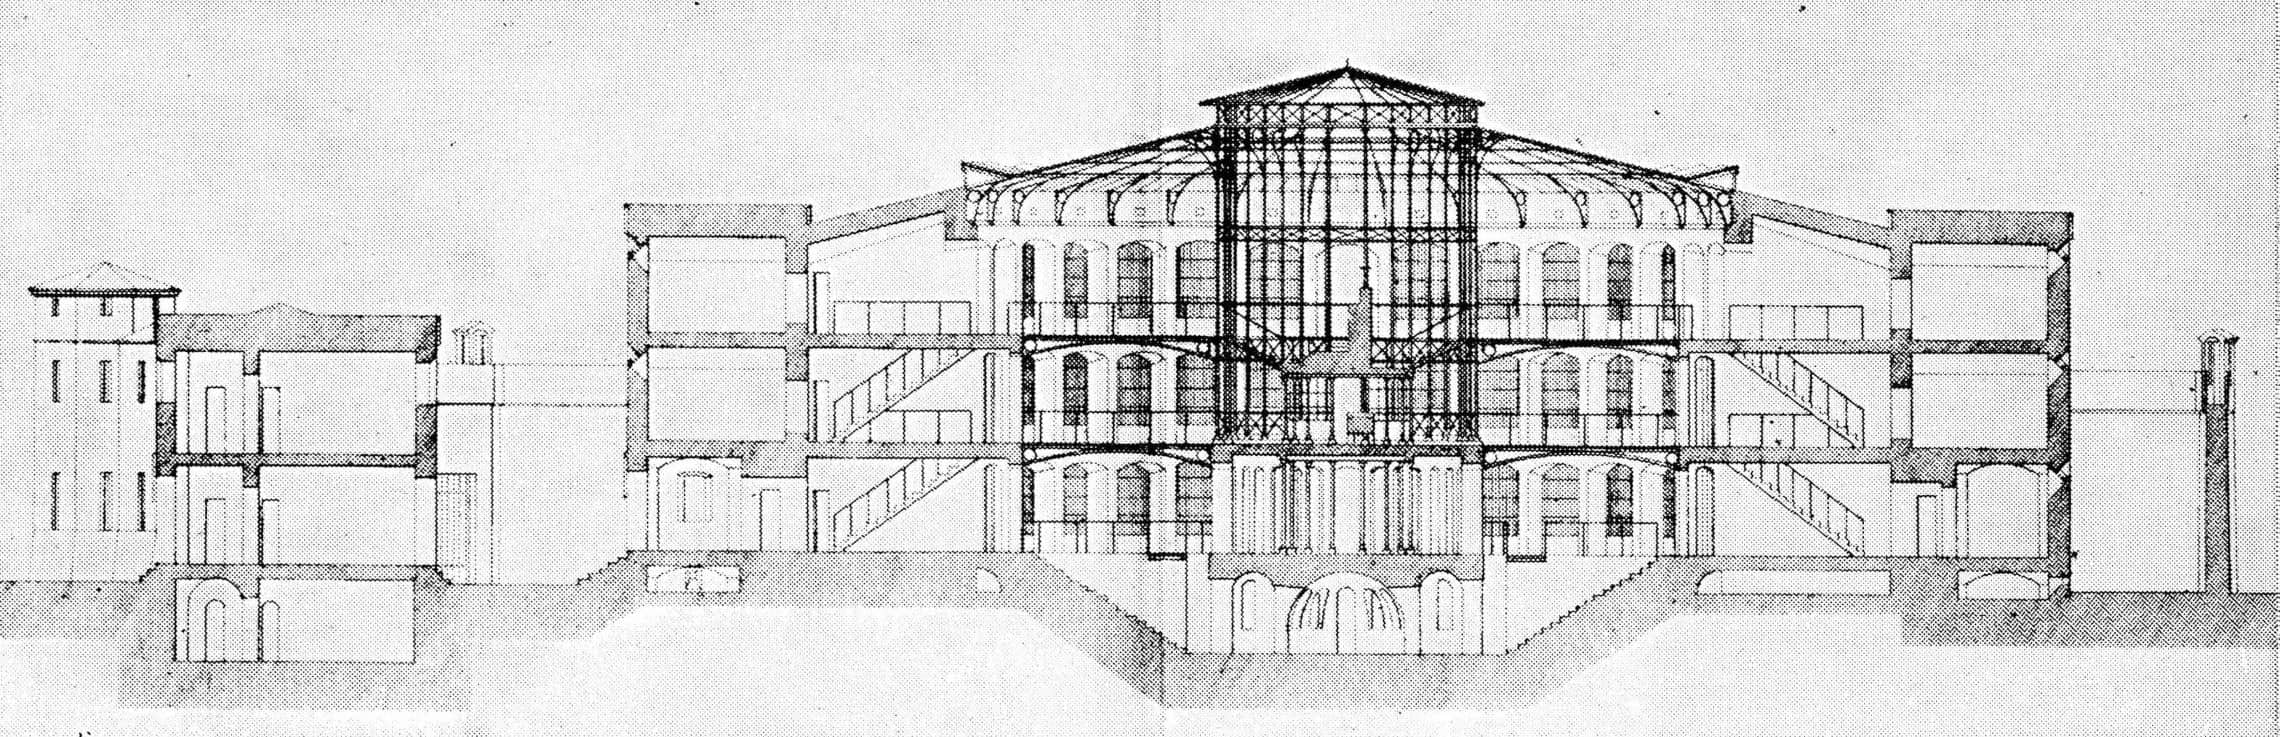 阿贝尔·布吕埃(Abel Blouet)所设计的监狱项目剖面图，1841年由法国内务部出版。也是一个非常接近全景敞视监狱的设计图。以上3张图片均出自罗宾·埃文斯文章